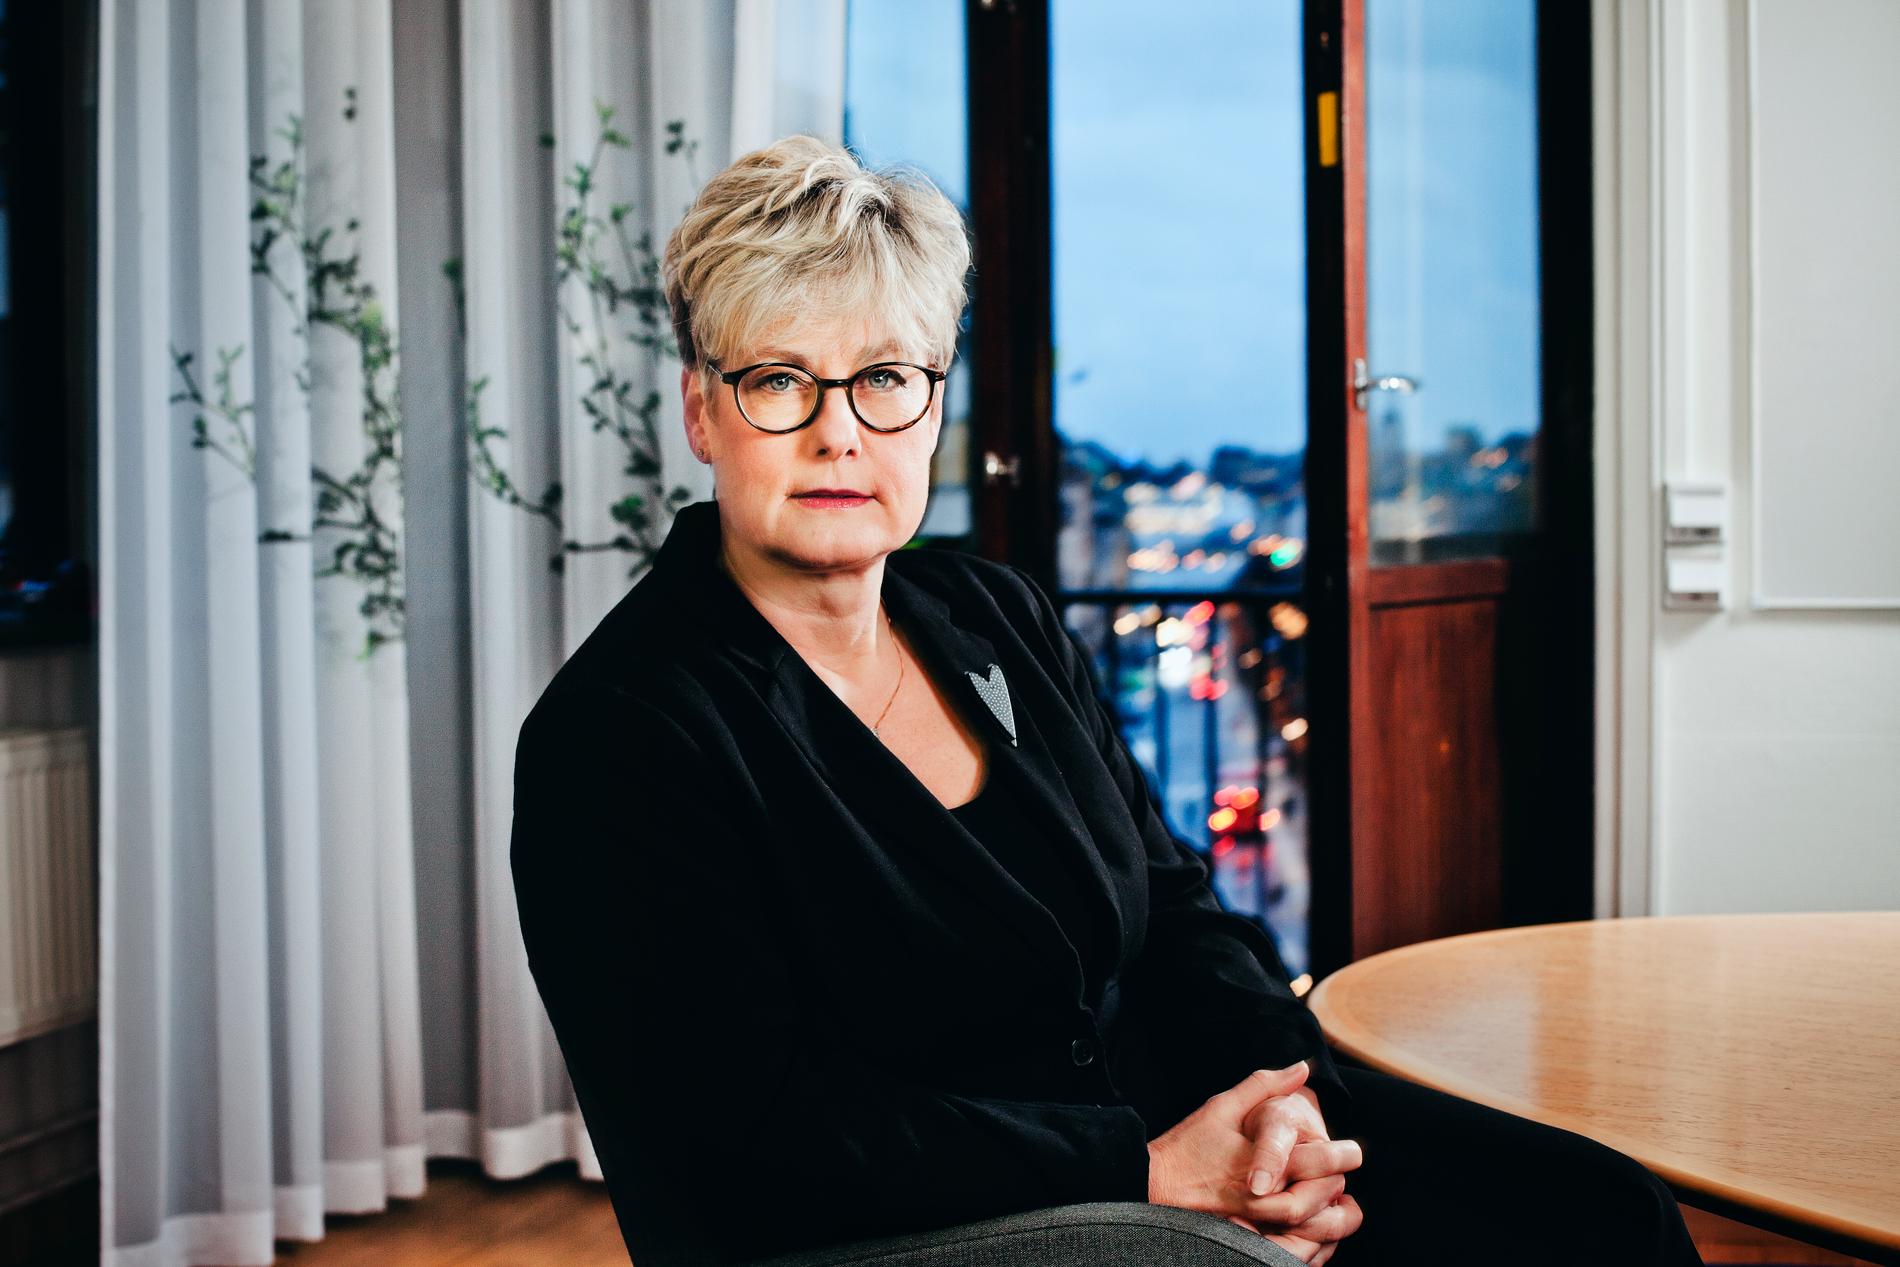 Hyresgästföreningens förbundsordförande Marie Linder tillträdde 2014. Hon har inte haft möjlighet att ställa upp på en intervju med Aftonbladet om miljonlöner och bonusresor.  